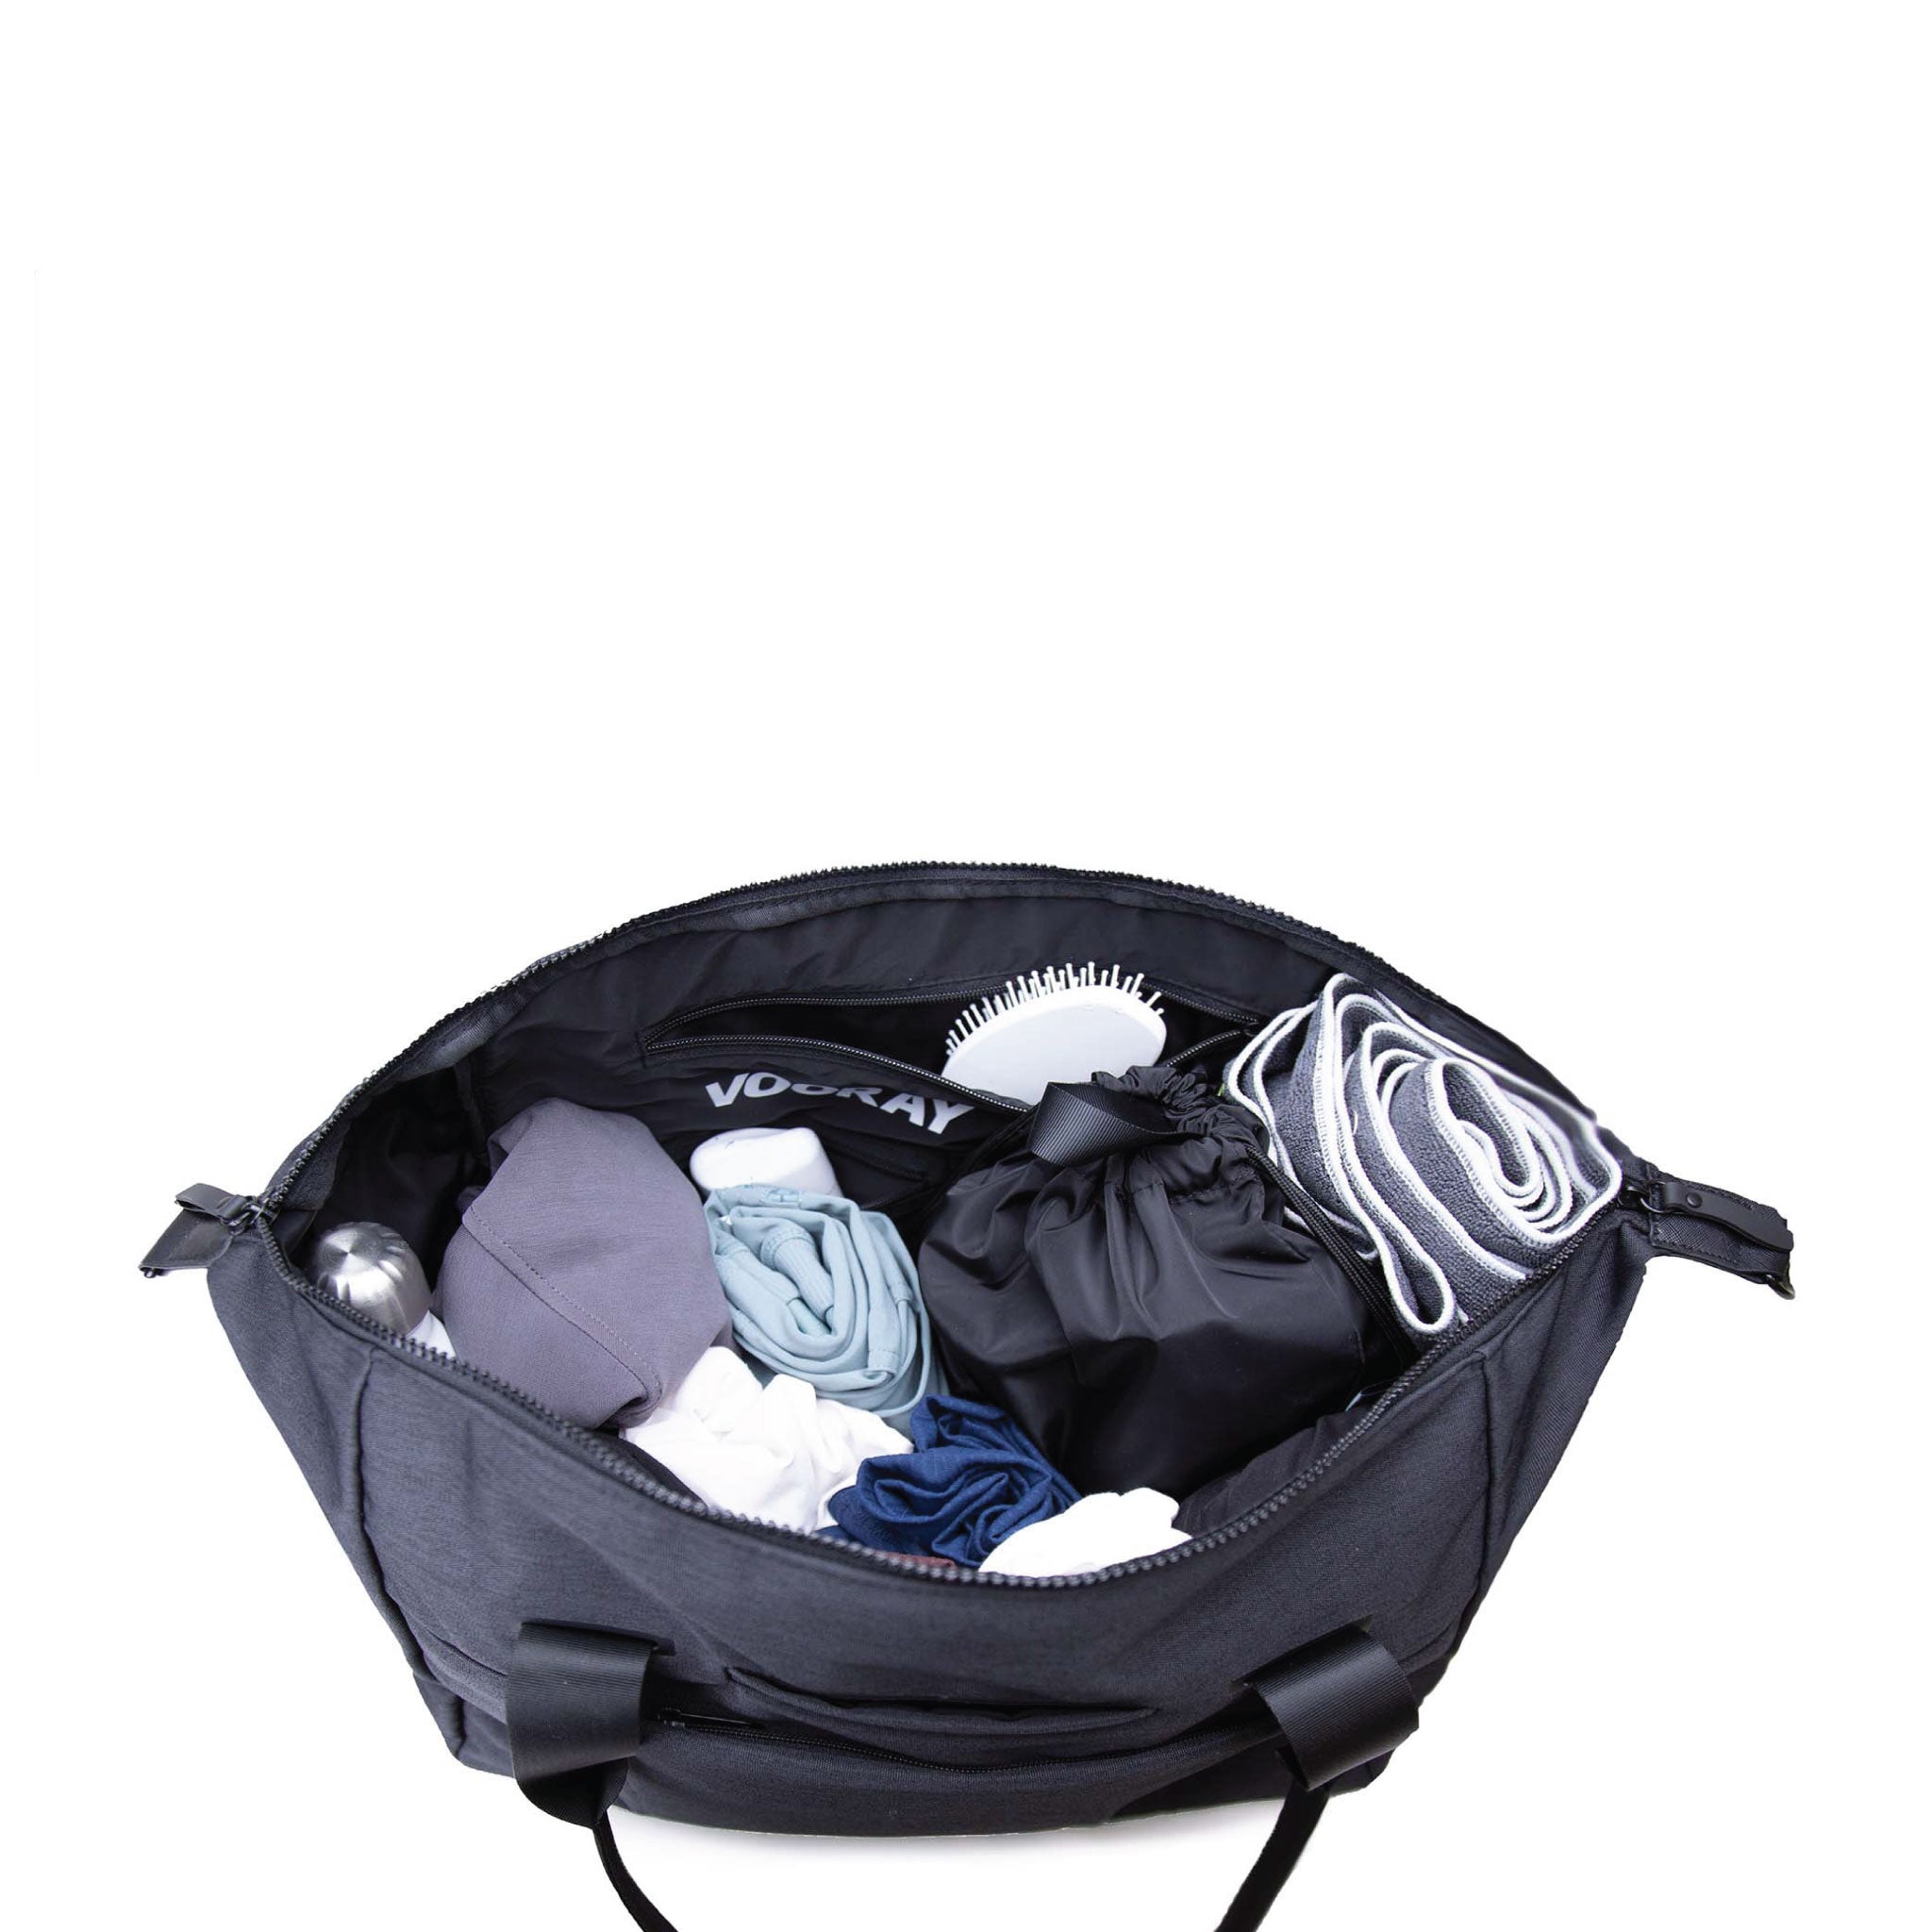 Vooray Alana Duffel Weekender - 25L - Reistas en sporttas met Laptopvak, inclusief afneembare schouderriem, droogtas met ritssluiting voor bijvoorbeeld natte kleren en een tasje met trekkoord ()